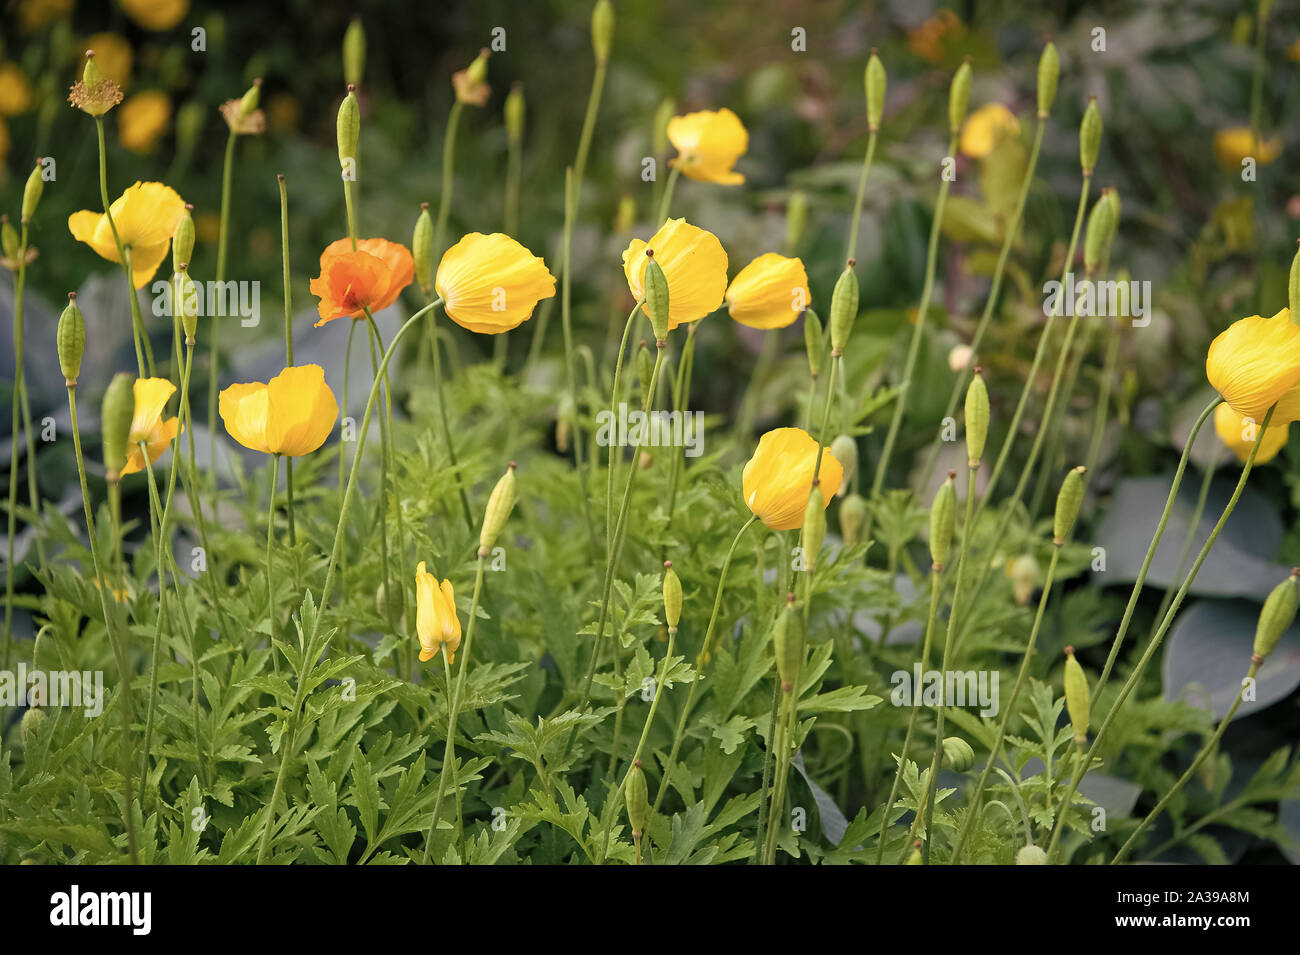 Die Quelle der Suchtstoff Opium. Gelber Mohn blüht. Mohn Blumen im Beet.  Poppy Blüten mit gelben Blüten auf natürlichen, grünen Hintergrund. Mohn  Pflanzen blühen auf Sommertag Stockfotografie - Alamy